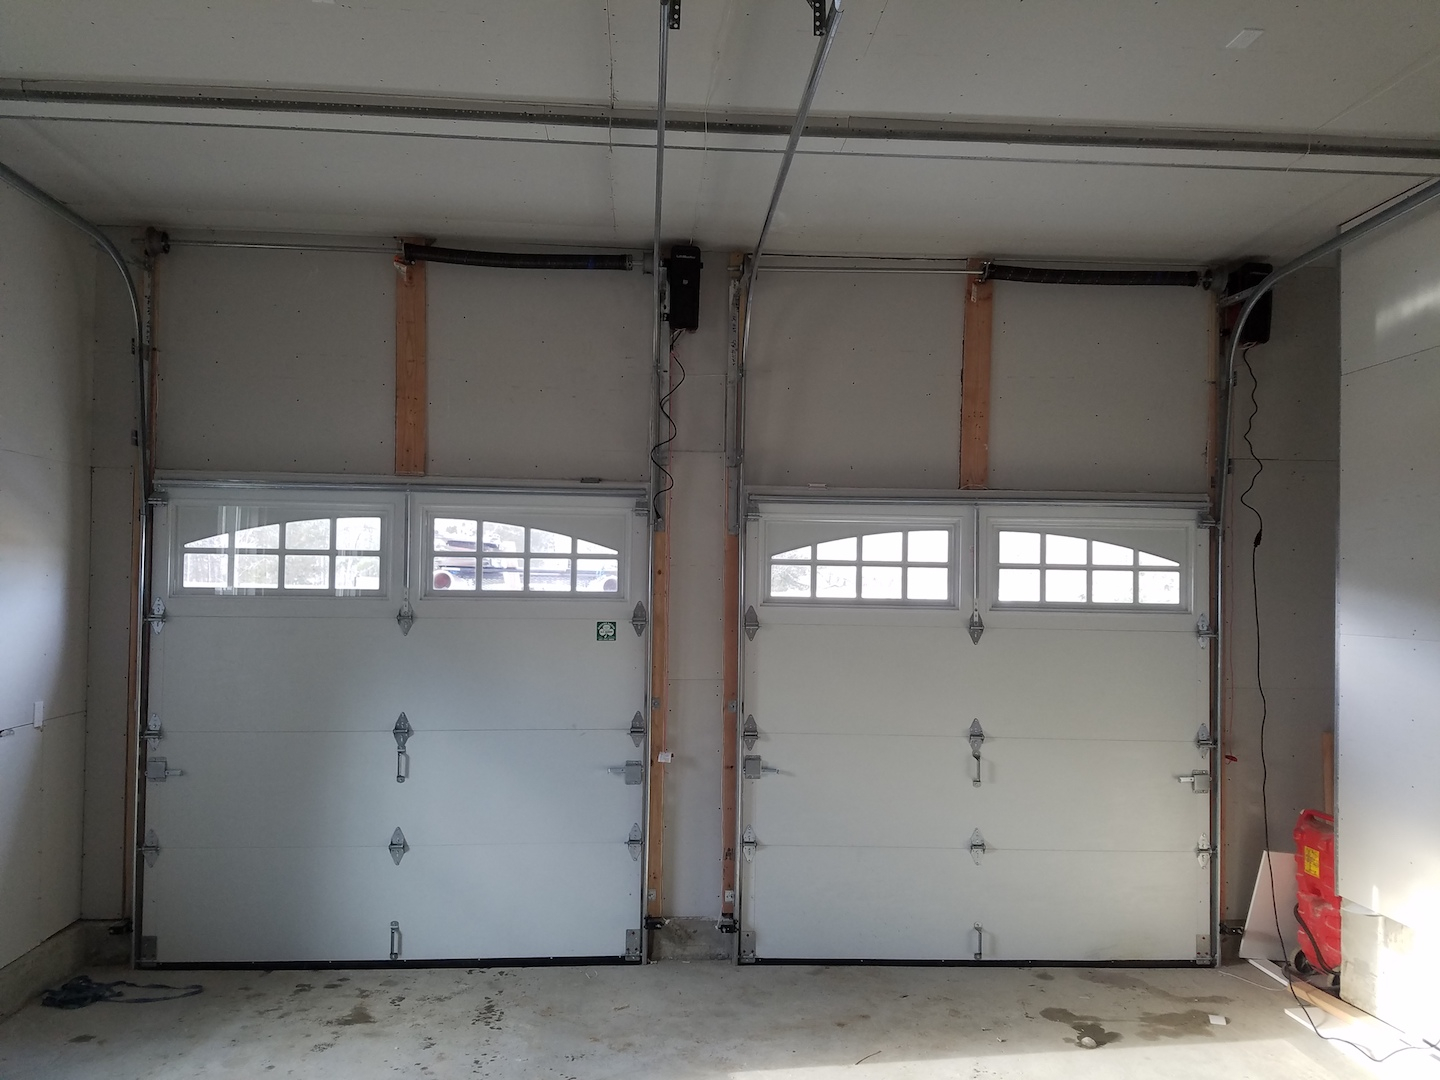 High Lift Garage Doors Vertical Lift Garage Doors in size 1440 X 1080